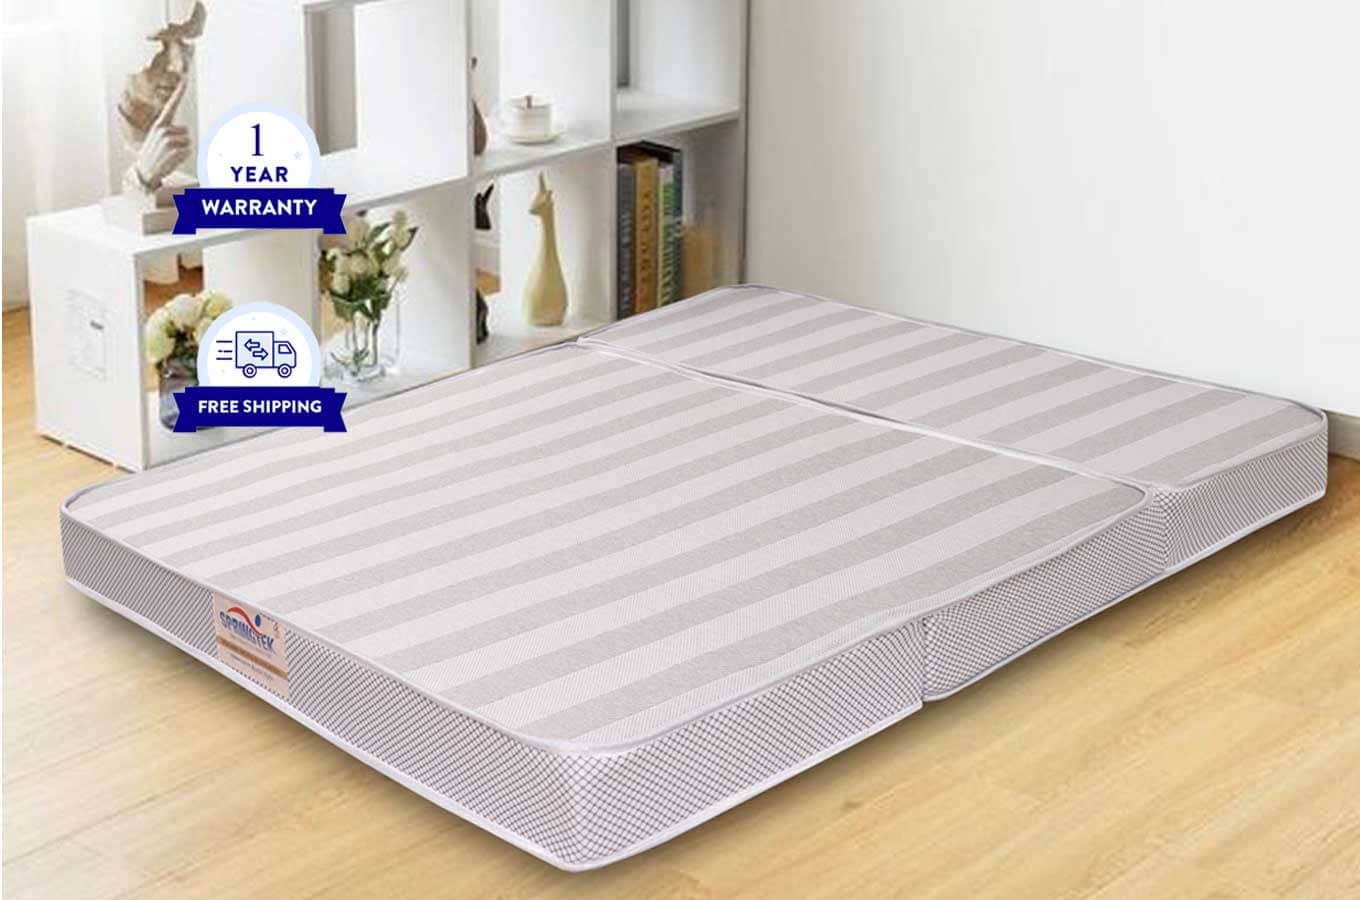 4 inch foldable mattress shipped overnight